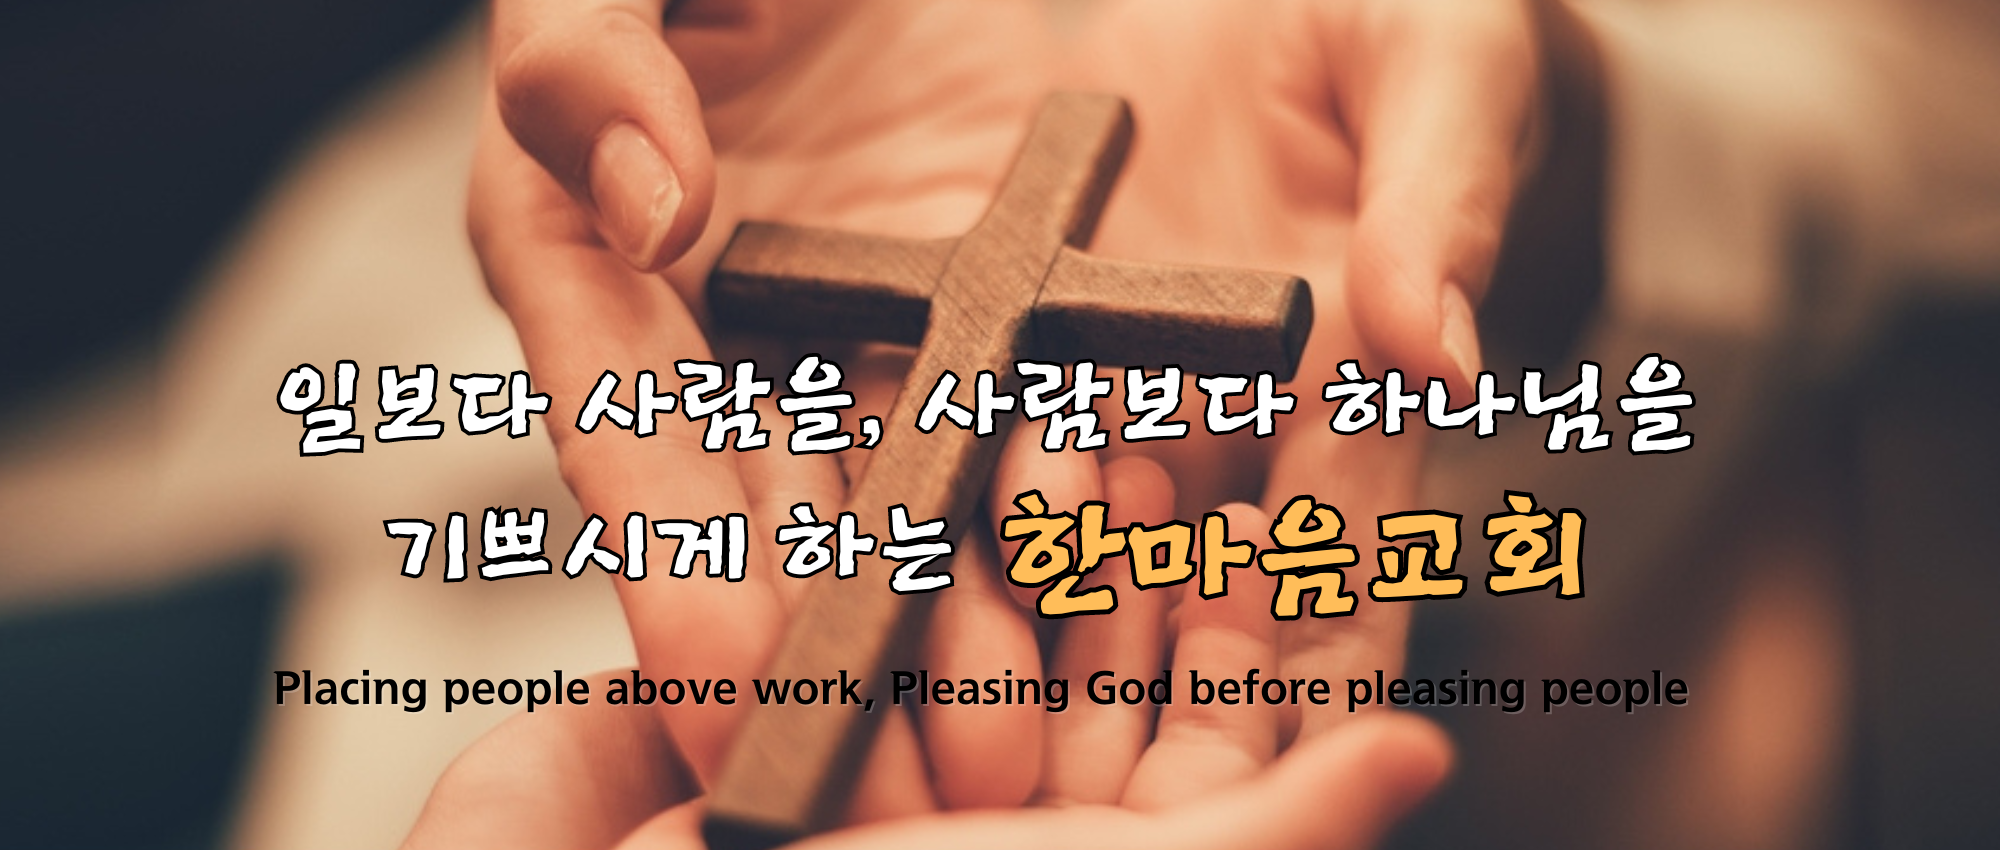 Placing people above work, Pleasing God before pleasing people